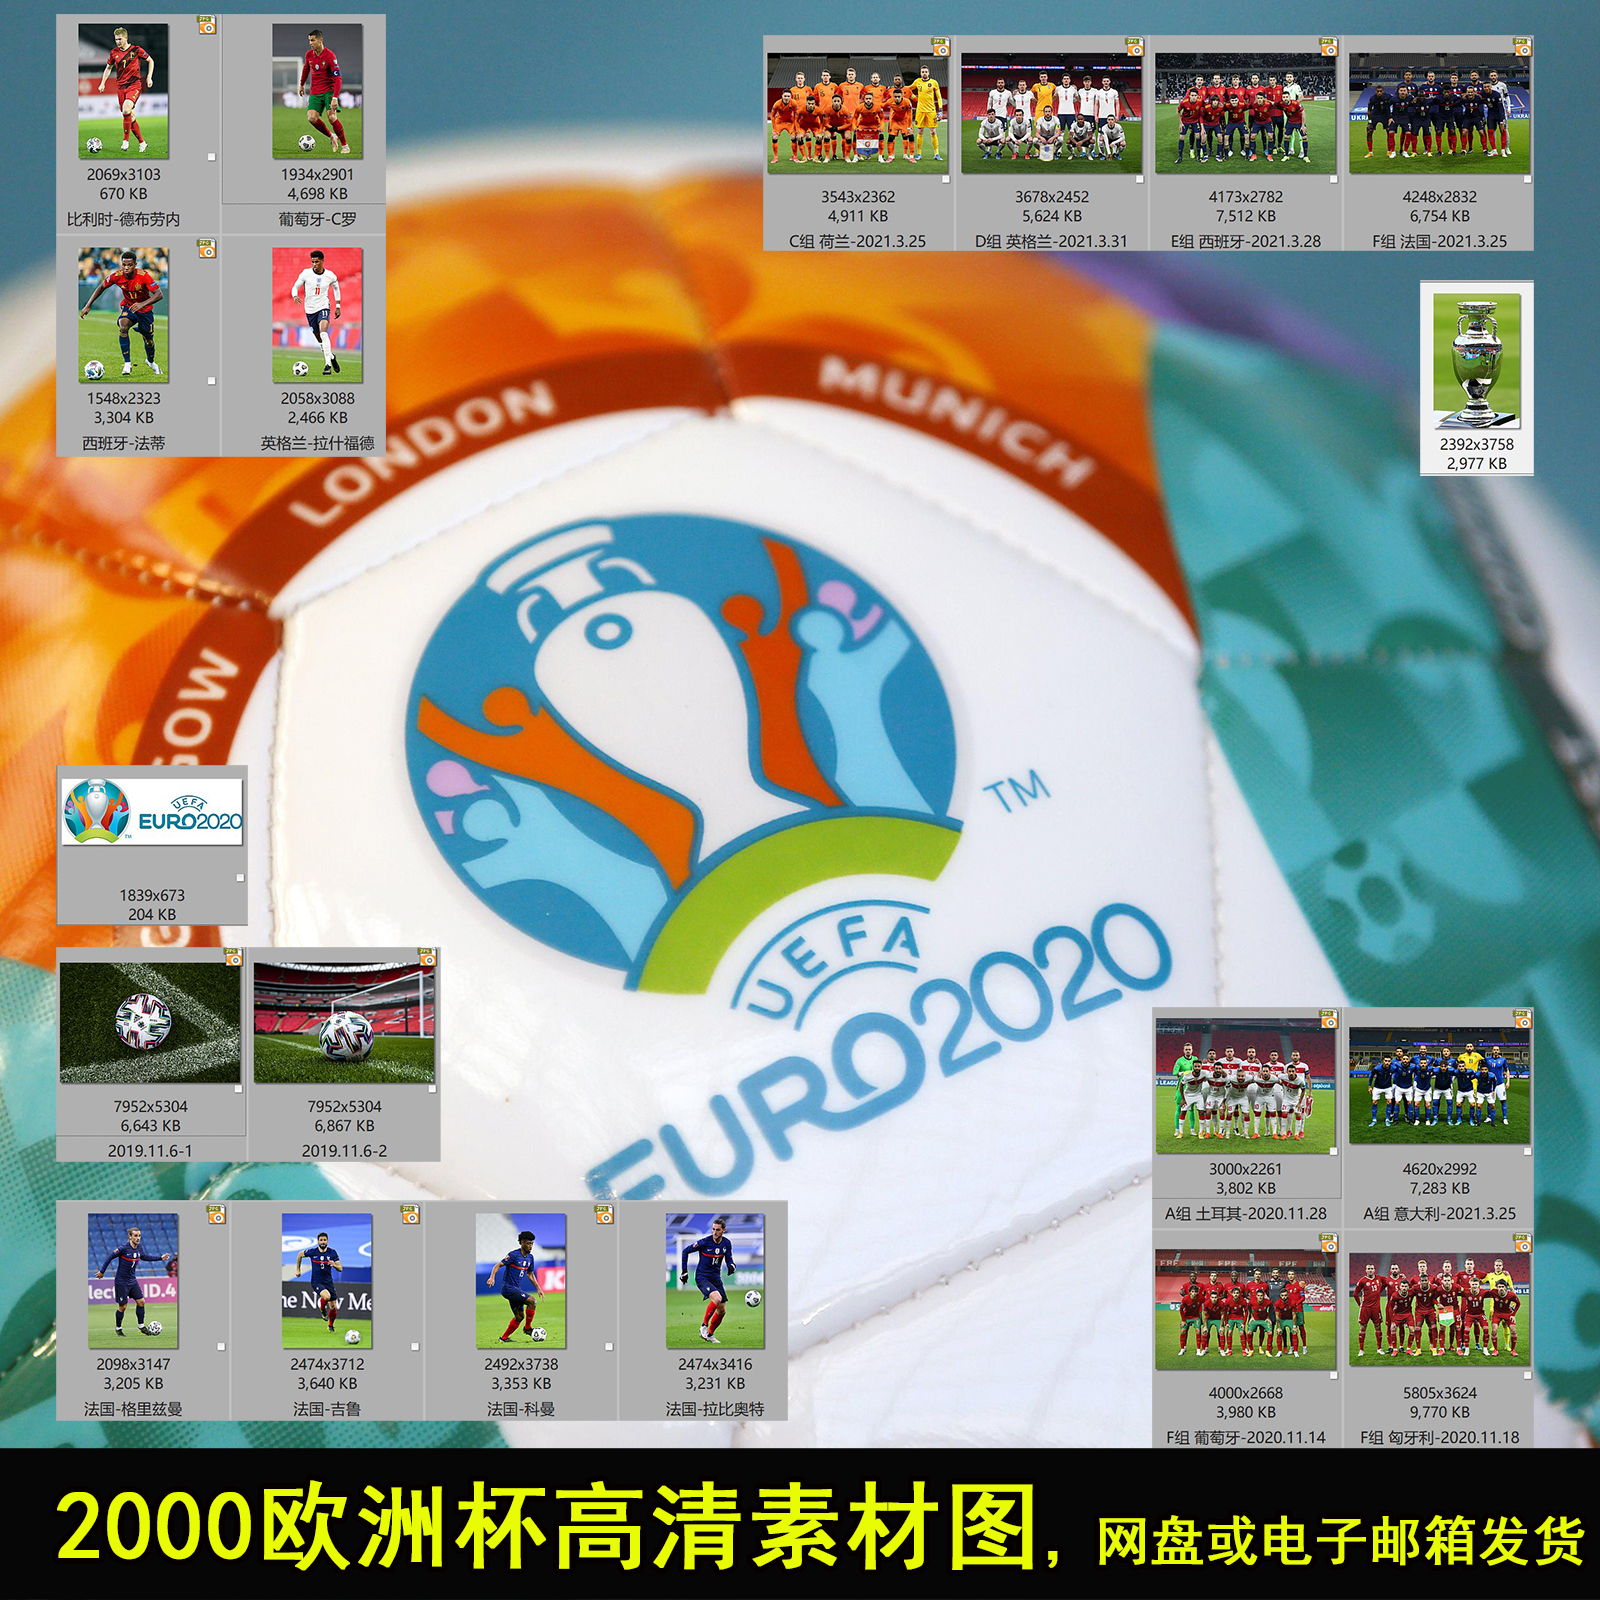 2020欧洲杯葡萄牙C罗法国姆巴佩球星高清图适合印照片做海报喷绘